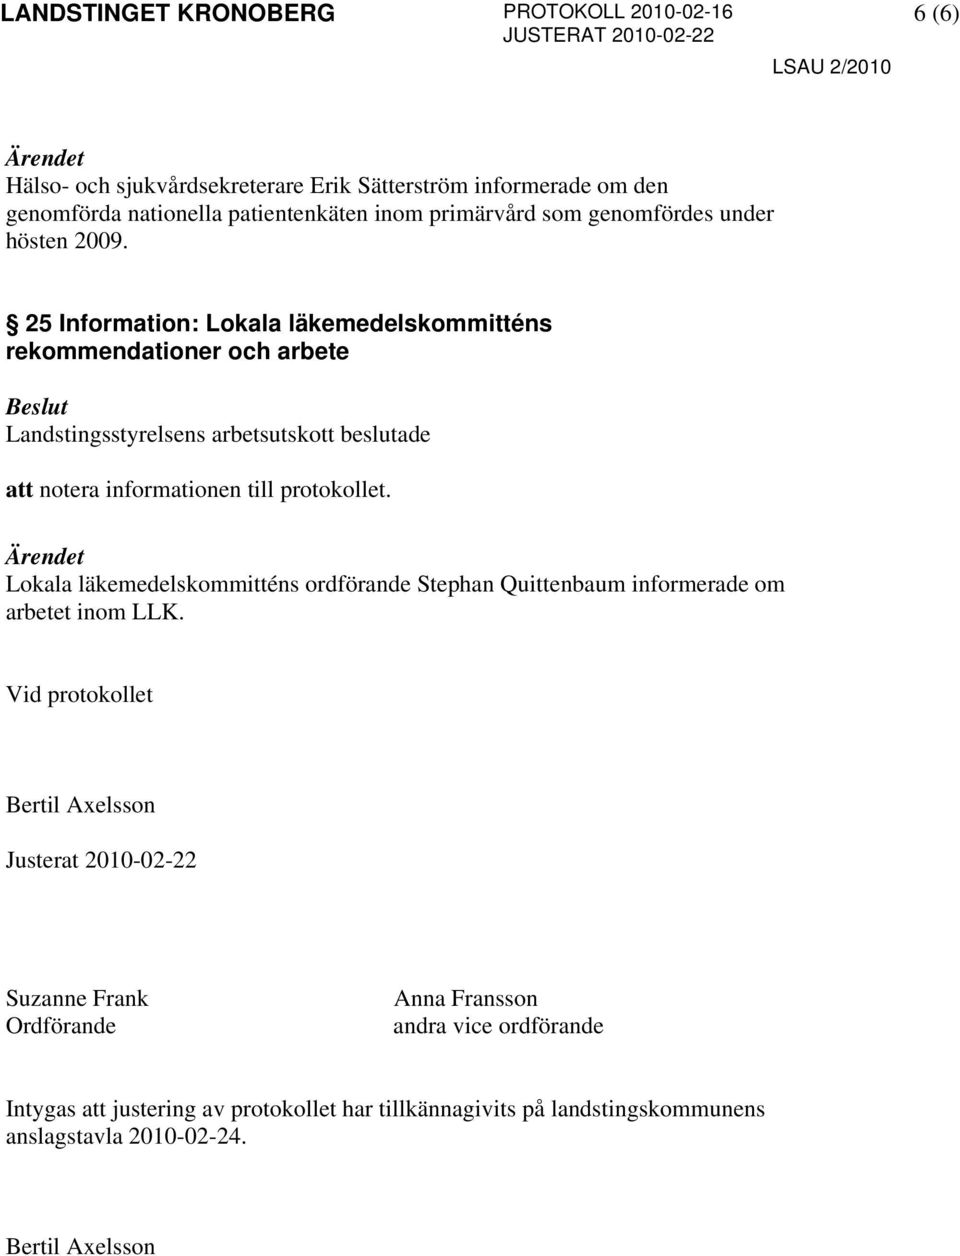 25 Information: Lokala läkemedelskommitténs rekommendationer och arbete Lokala läkemedelskommitténs ordförande Stephan Quittenbaum